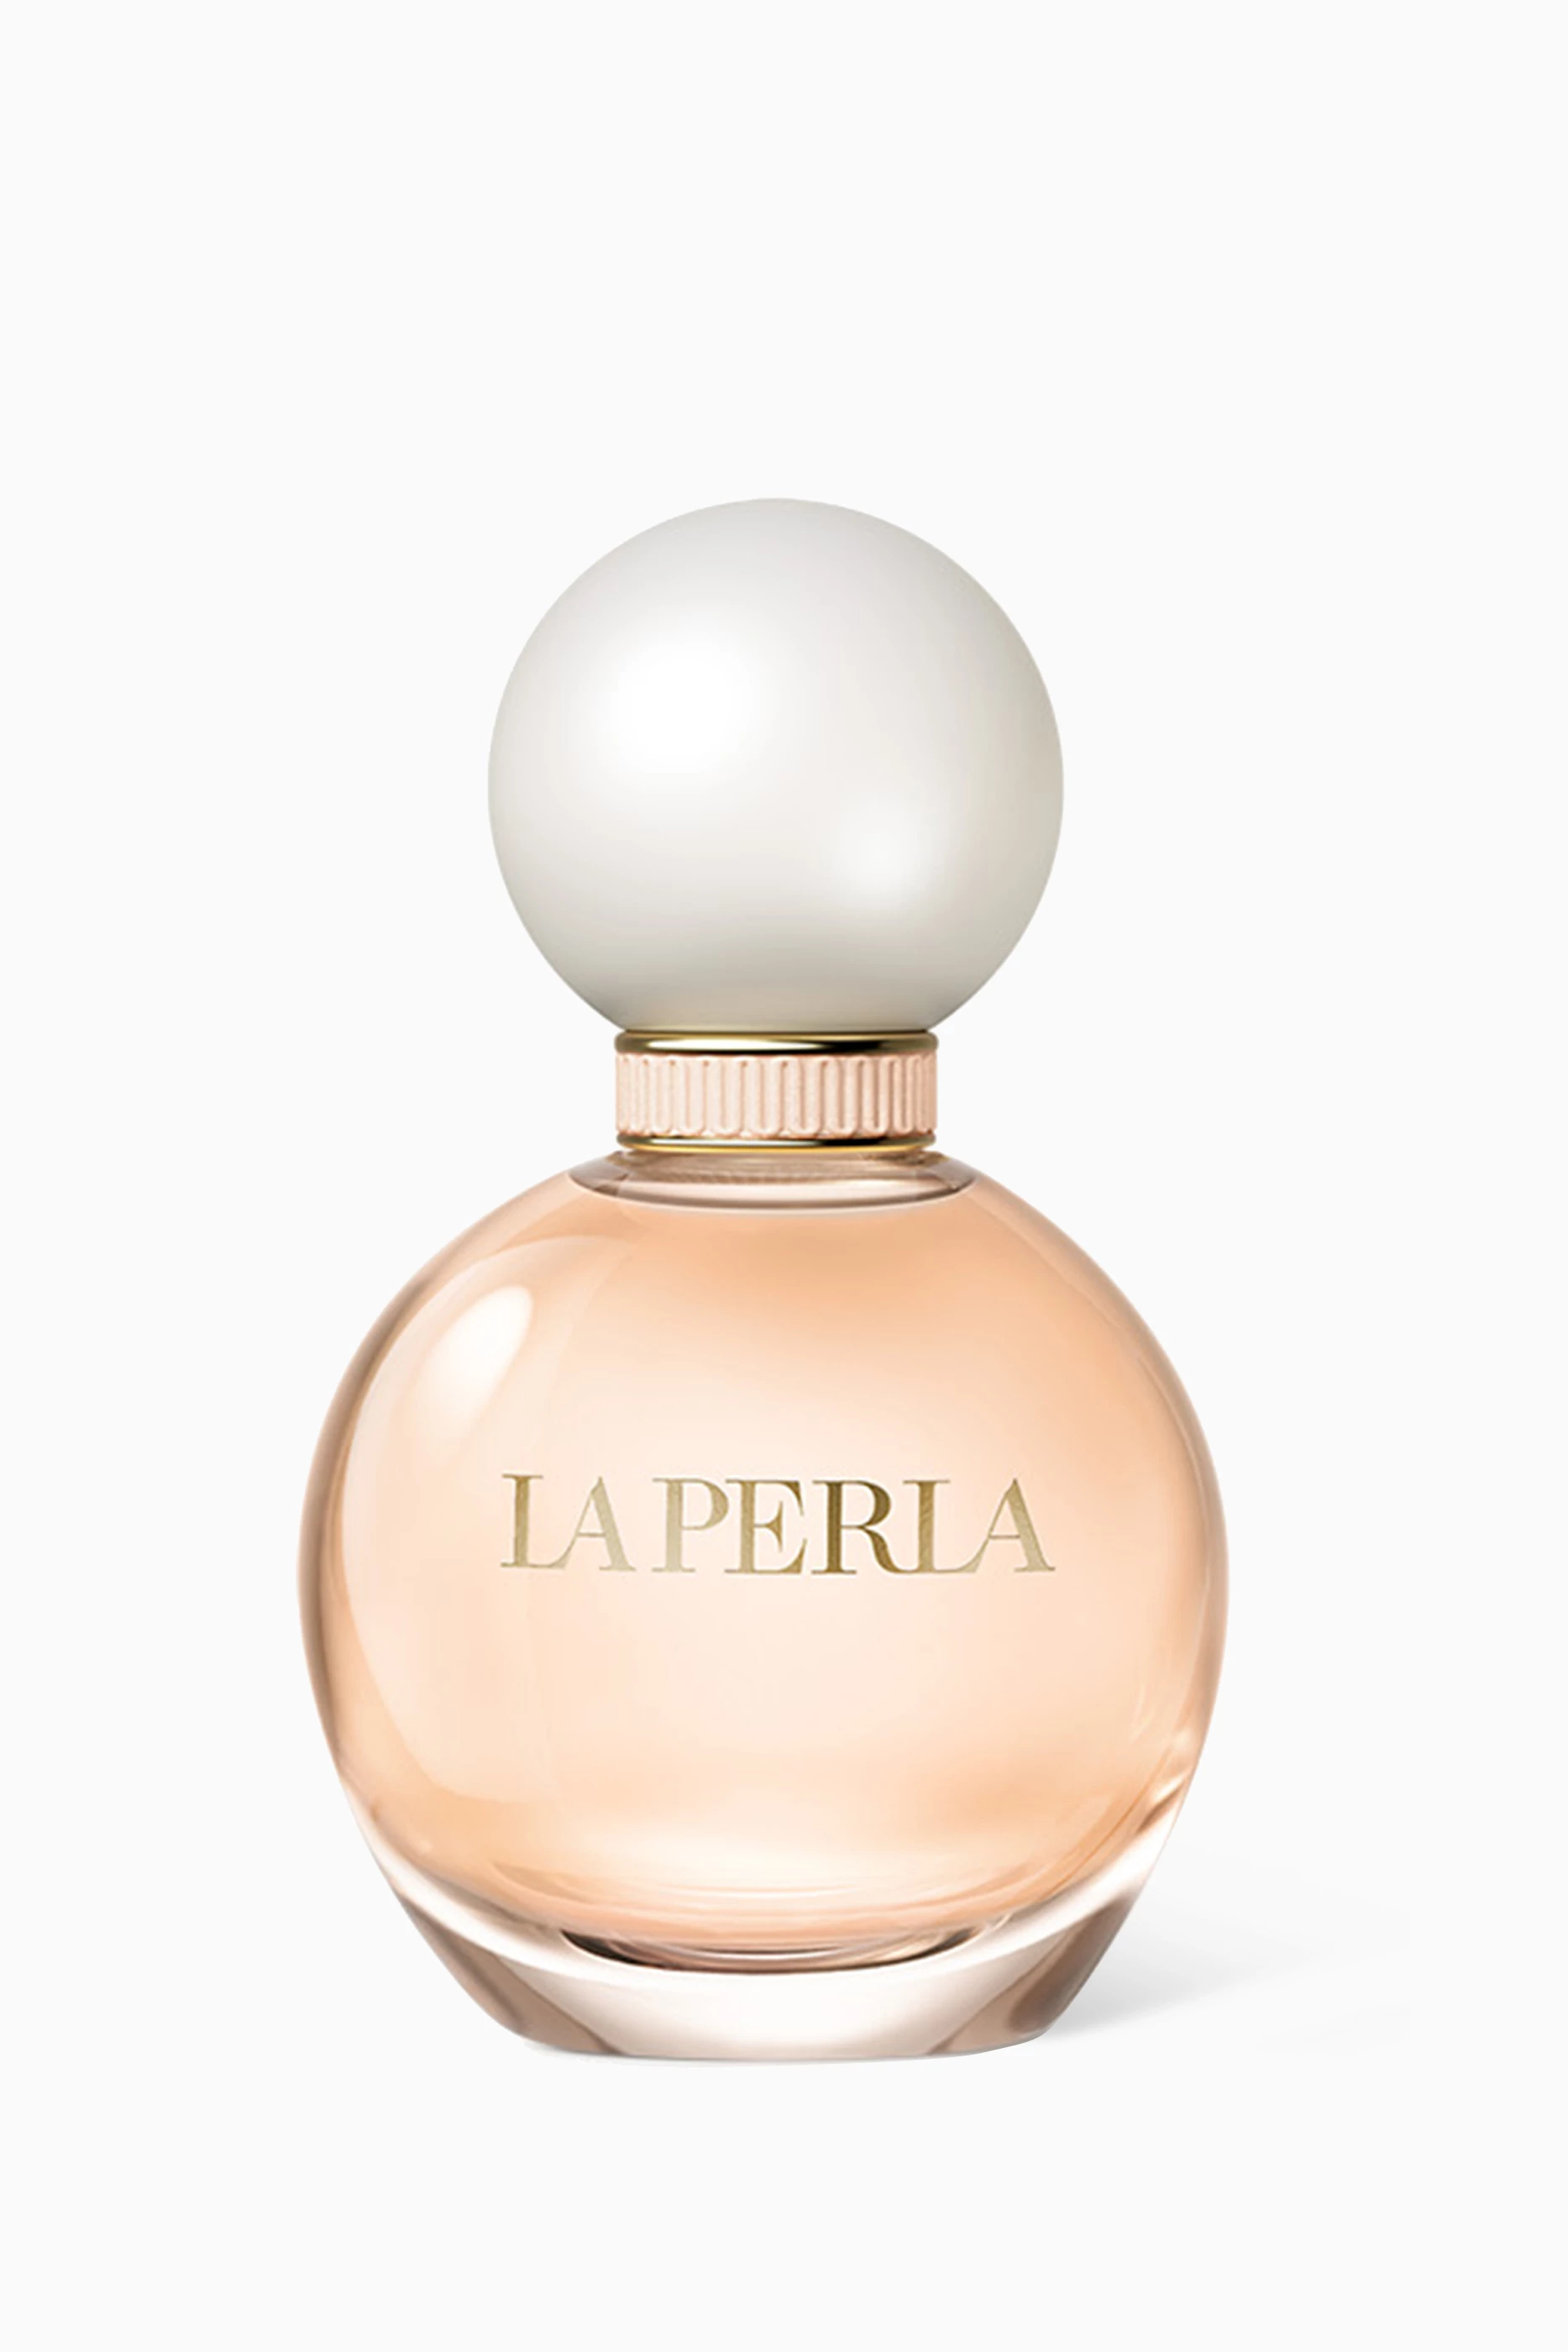 Buy La Perla Beauty Colourless Luminous Eau de Parfum, 90ml for